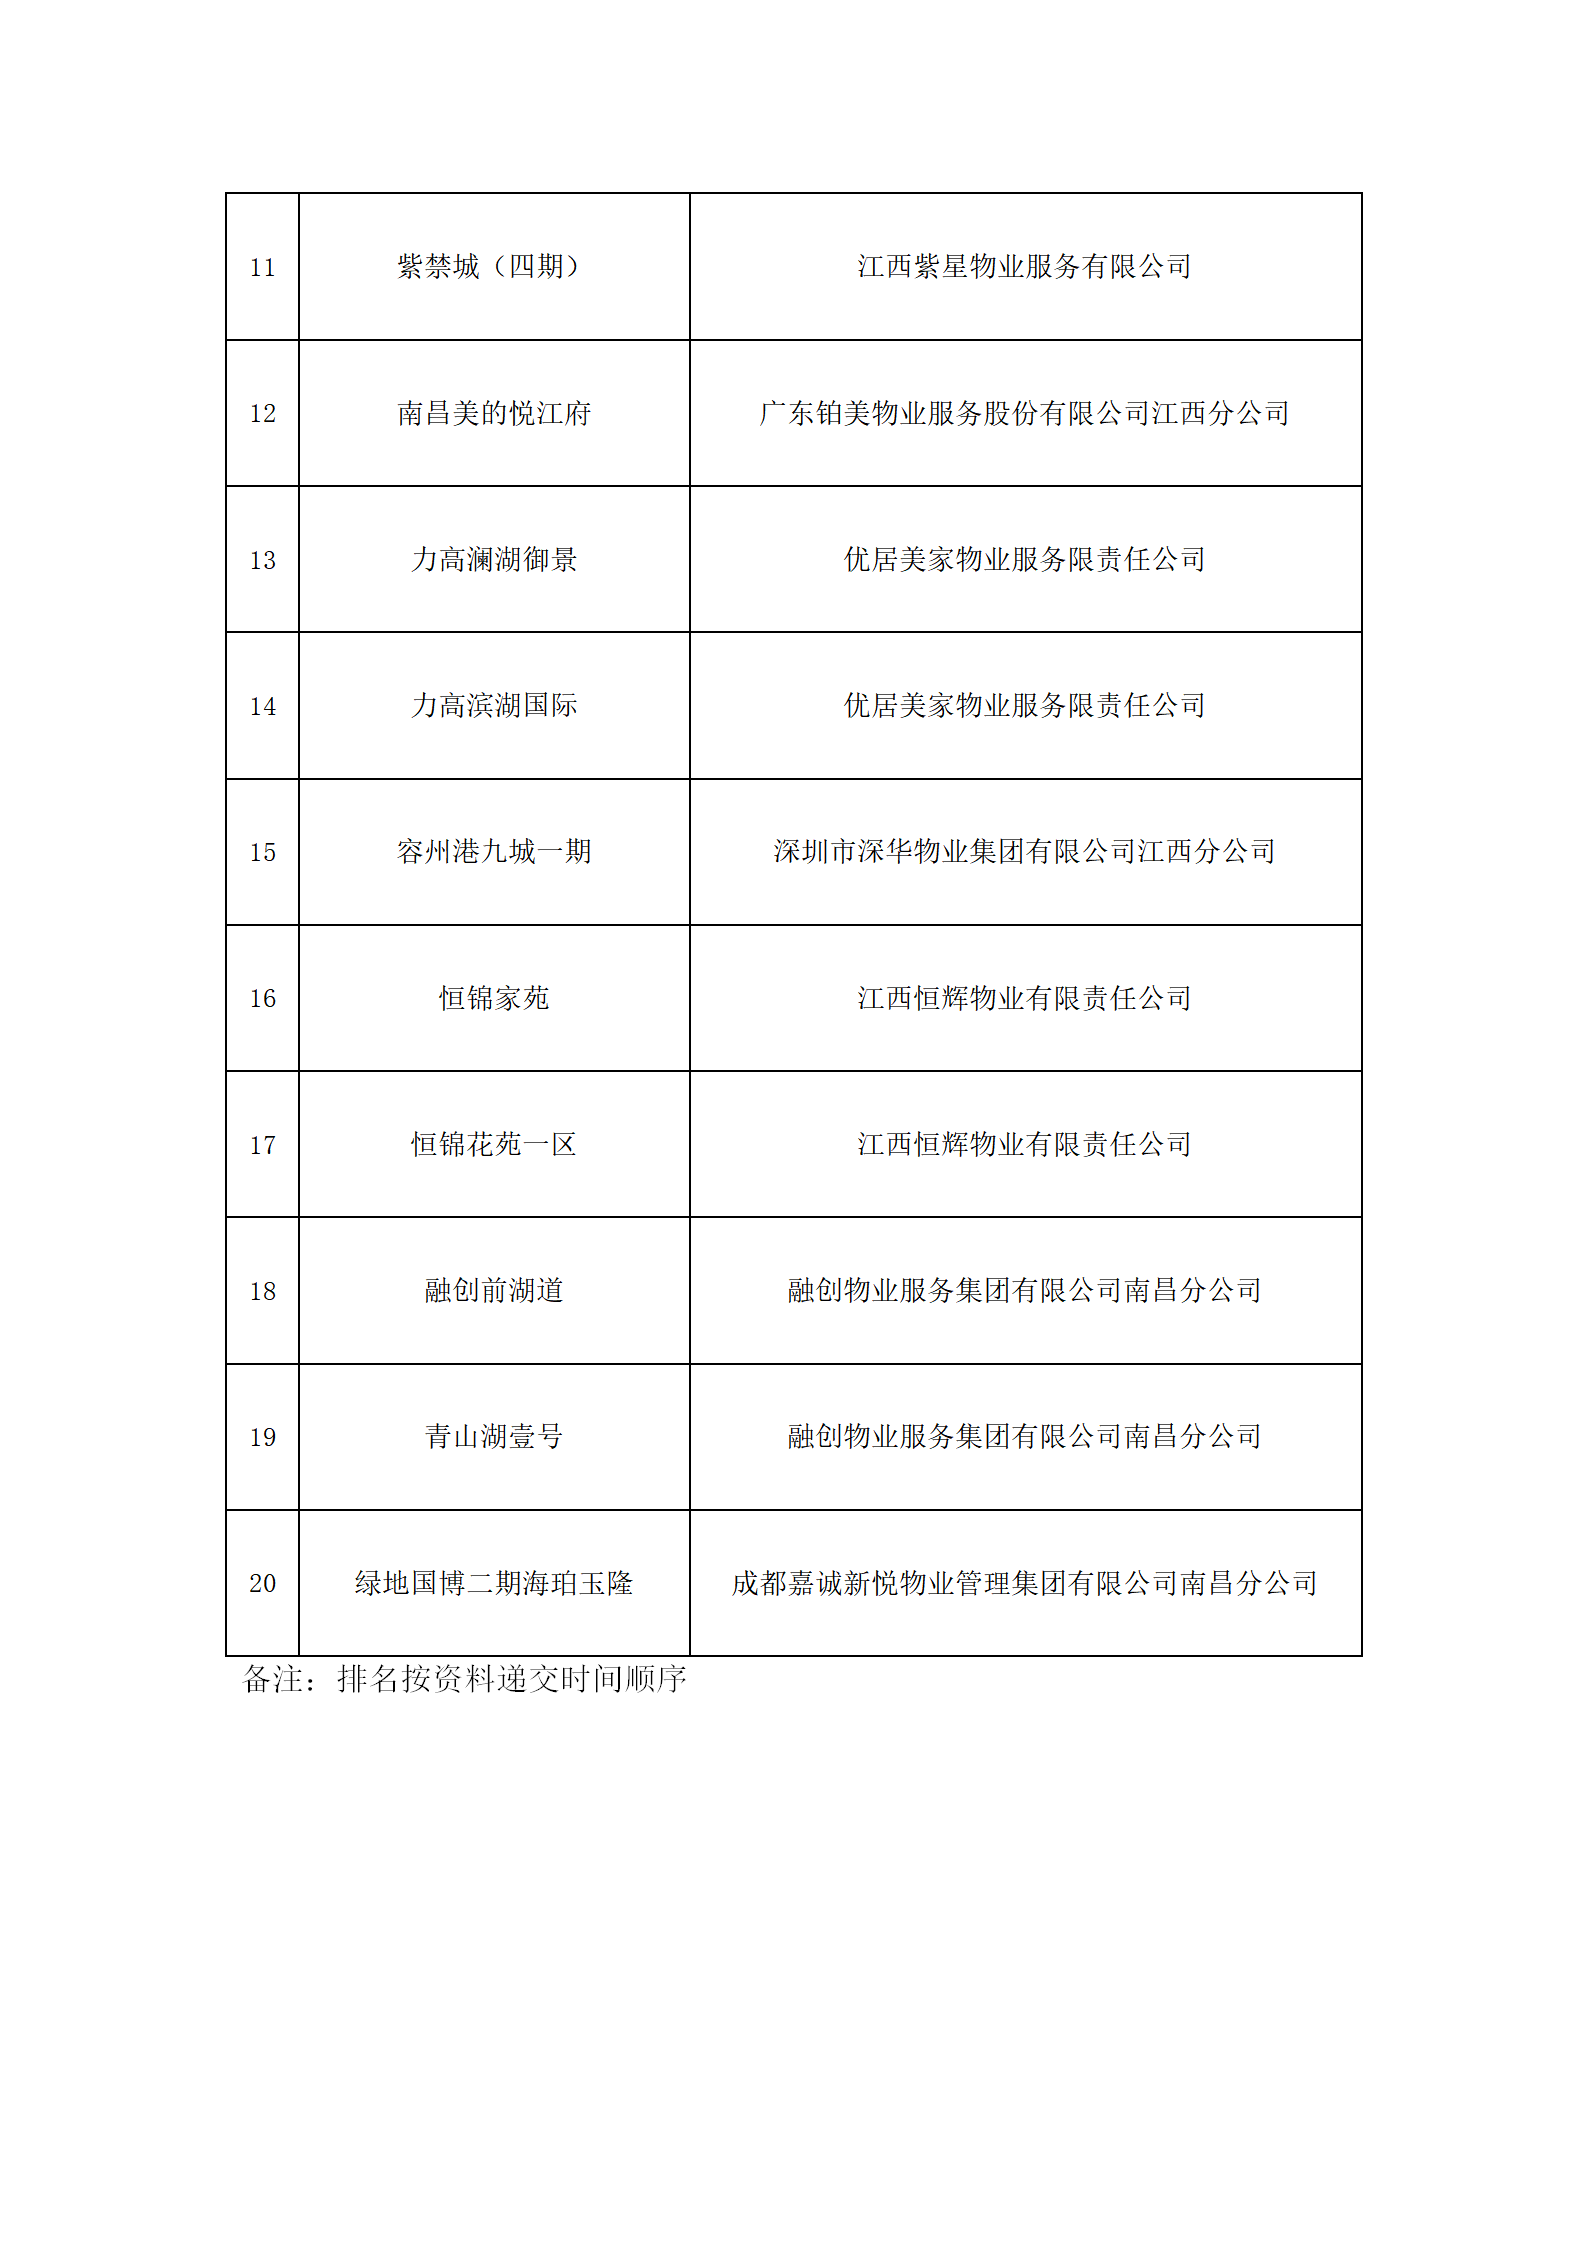 拟授予2021年度南昌市物业管理示范项目住宅类名单_02.png